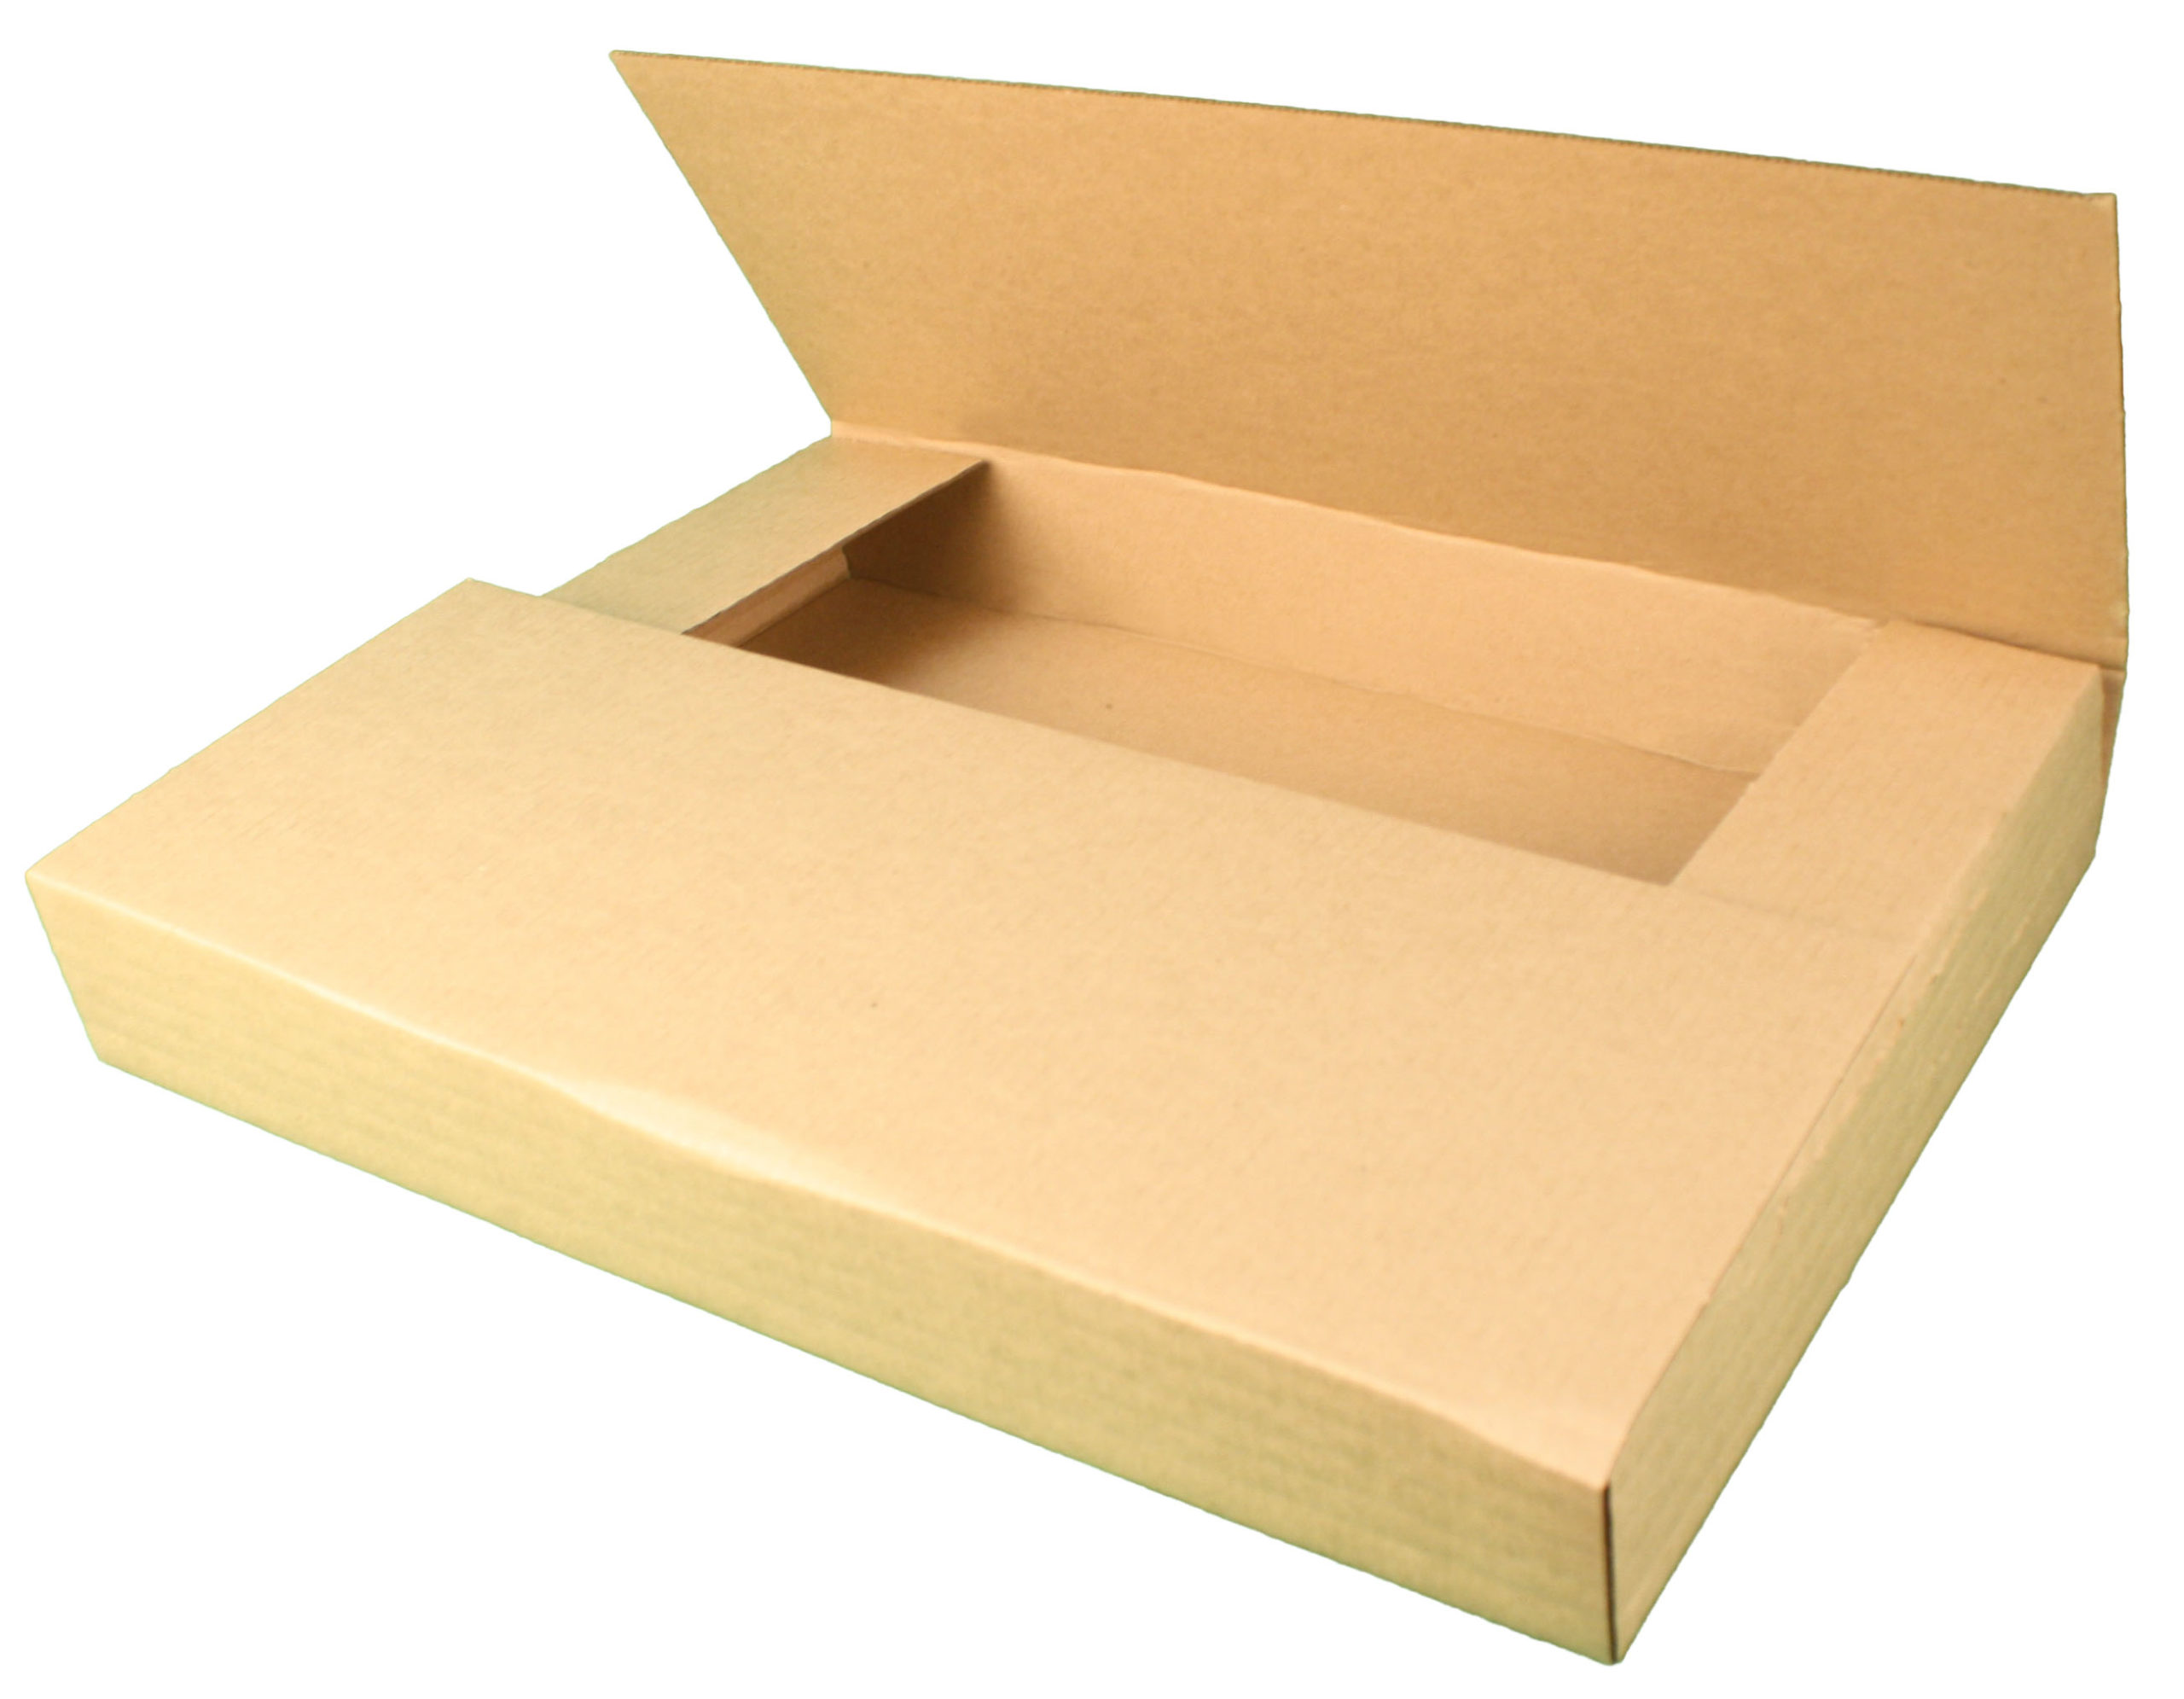 folded corrugated box